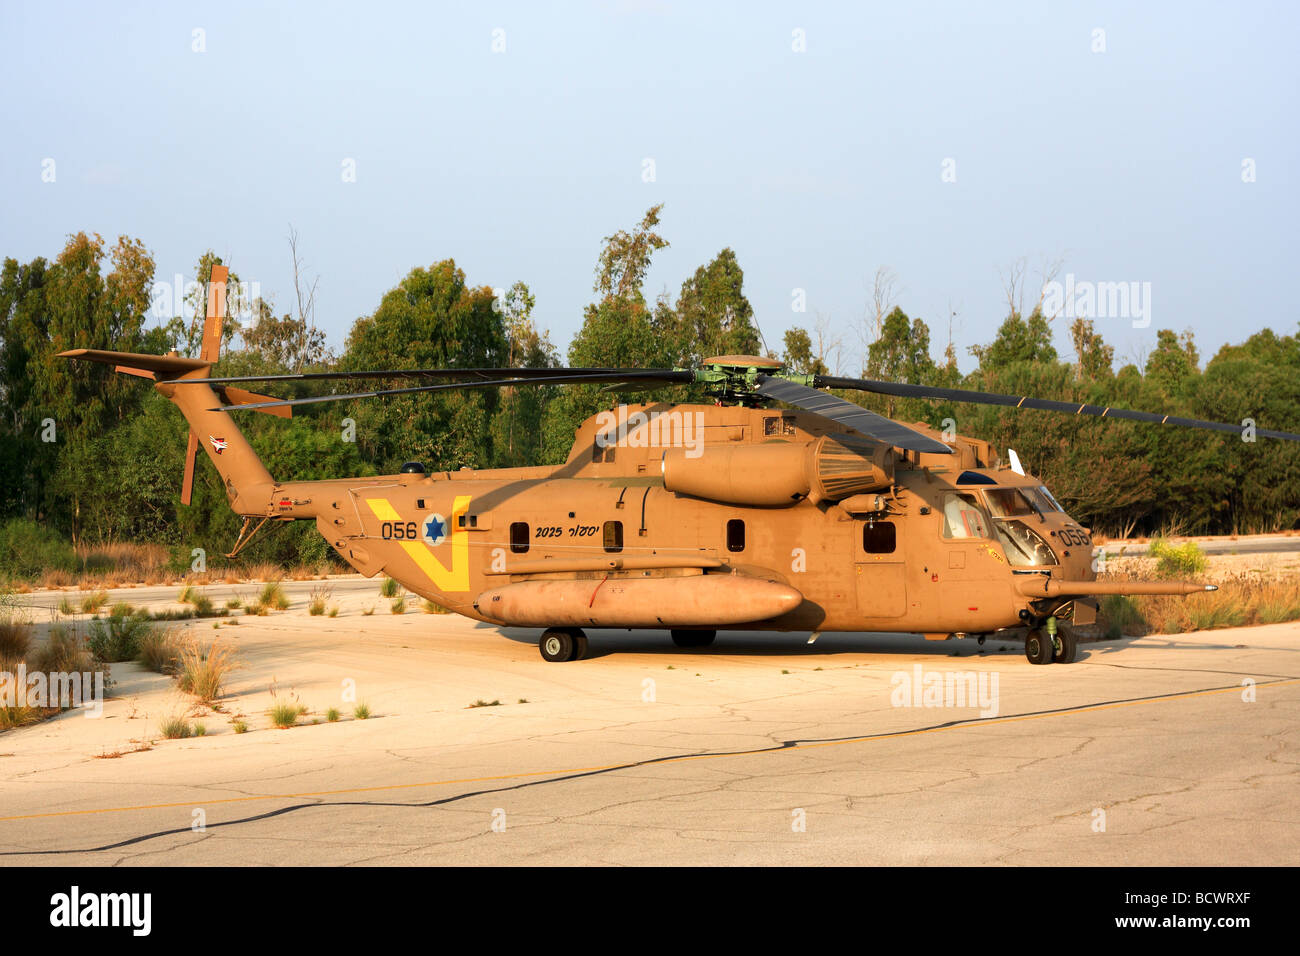 De l'air israélienne hélicoptère près d'un Sikorsky CH 53 sur le sol Banque D'Images